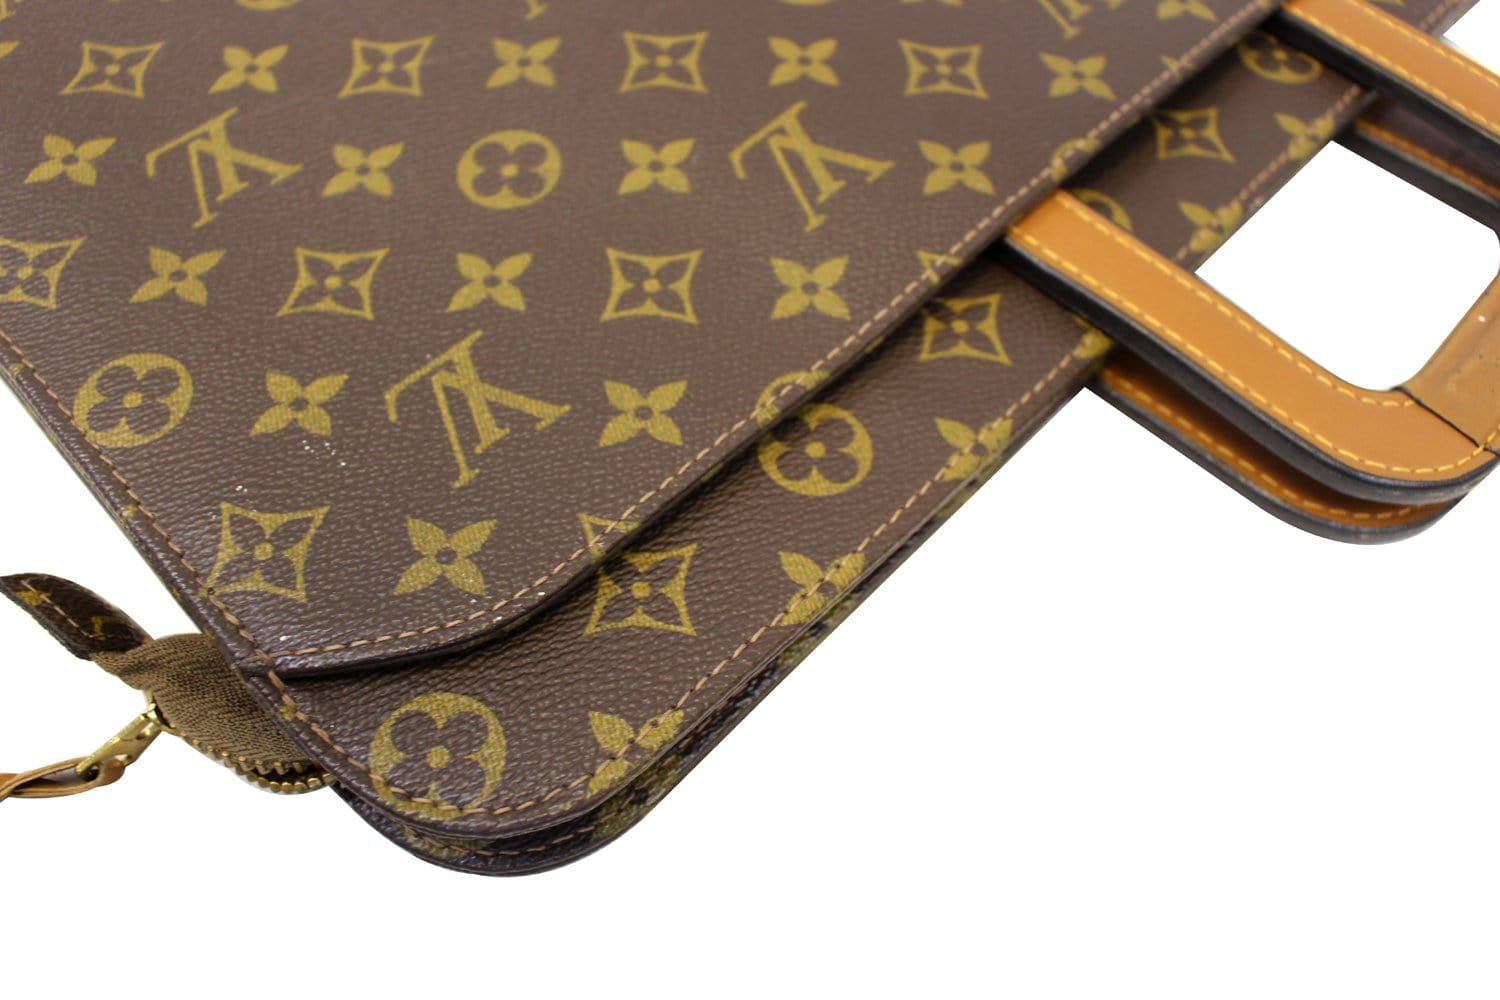 Louis Vuitton Briefcase 